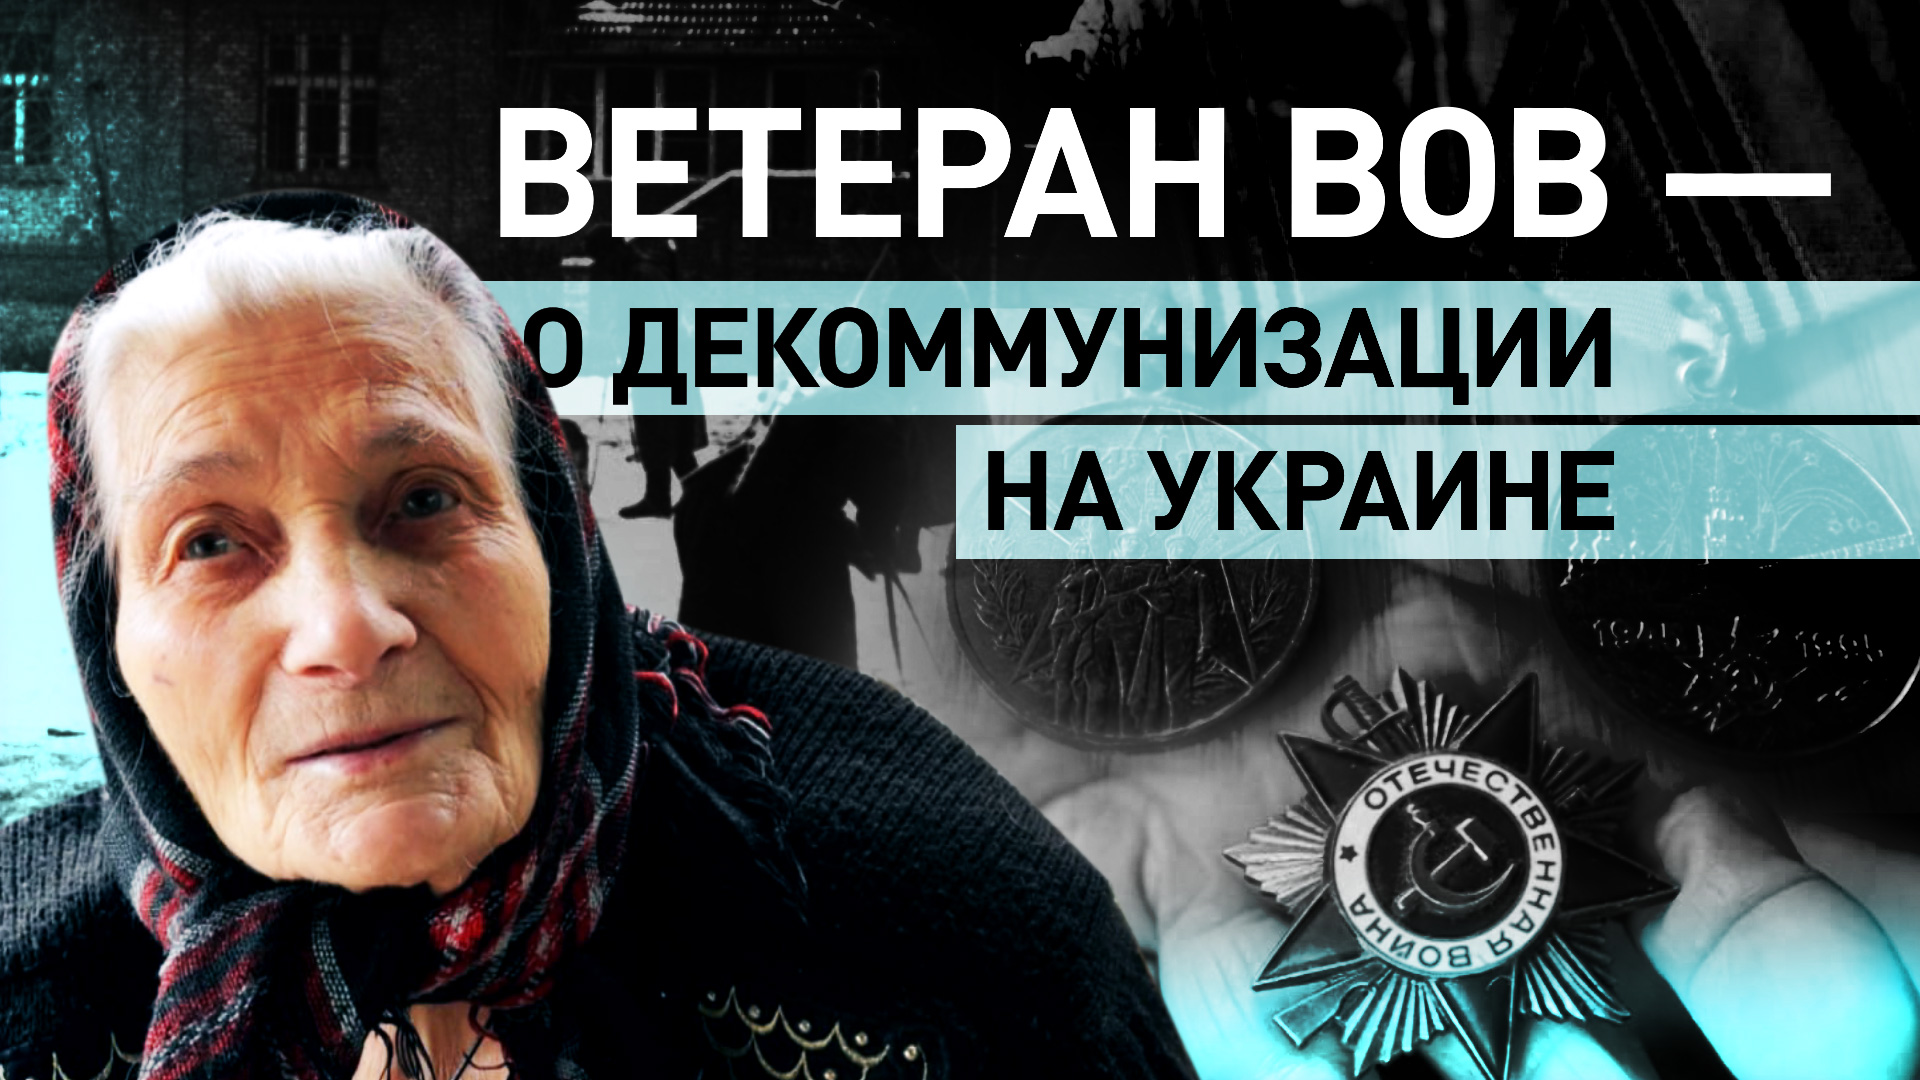 «Молодёжь довольная этим, а теперь прячется»: ветеран ВОВ — о попытках Украины переписать историю